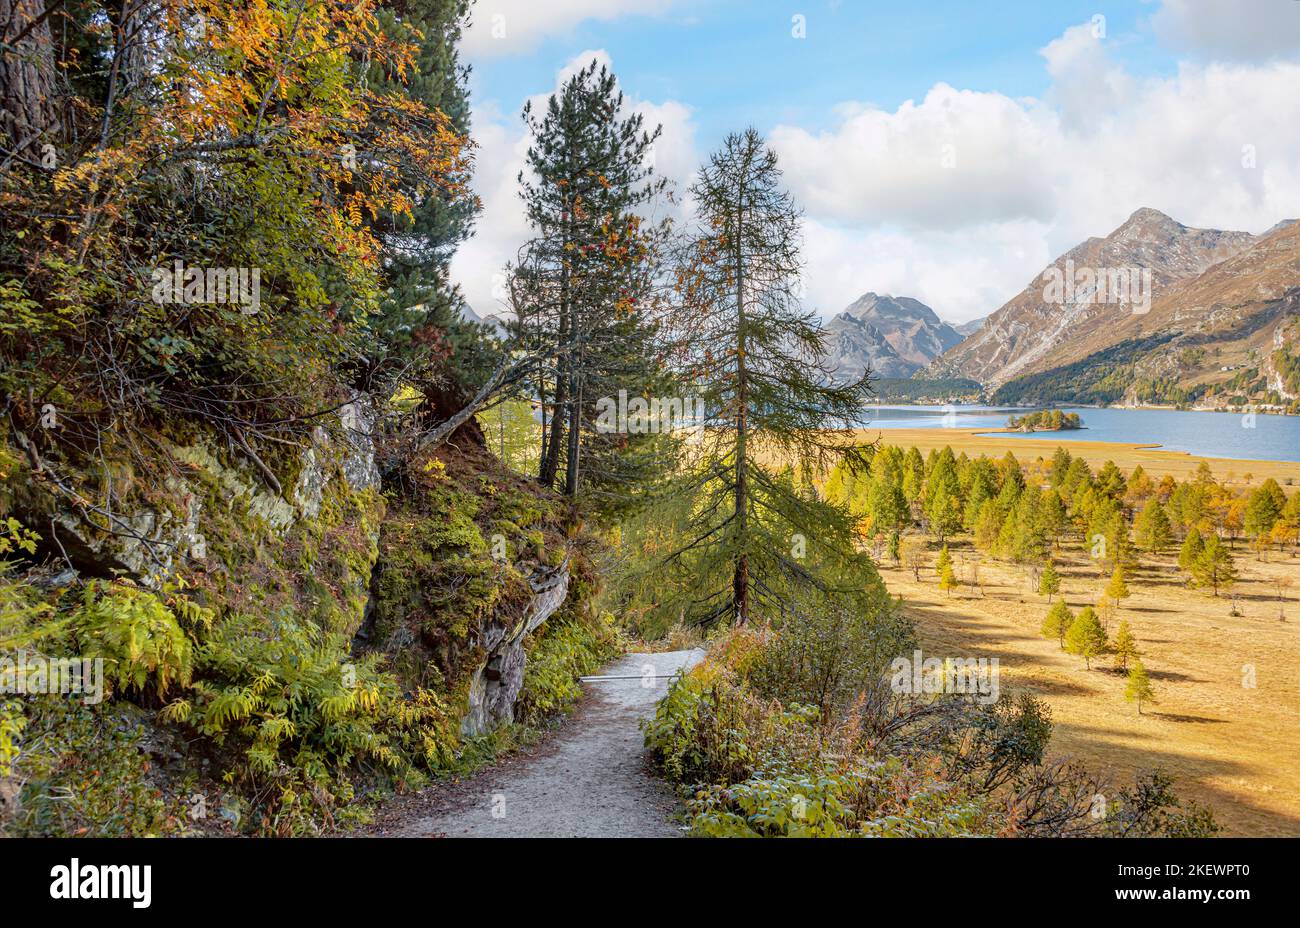 Autumn landscape at Lake Sils, Upper Engadine, Switzerland Stock Photo